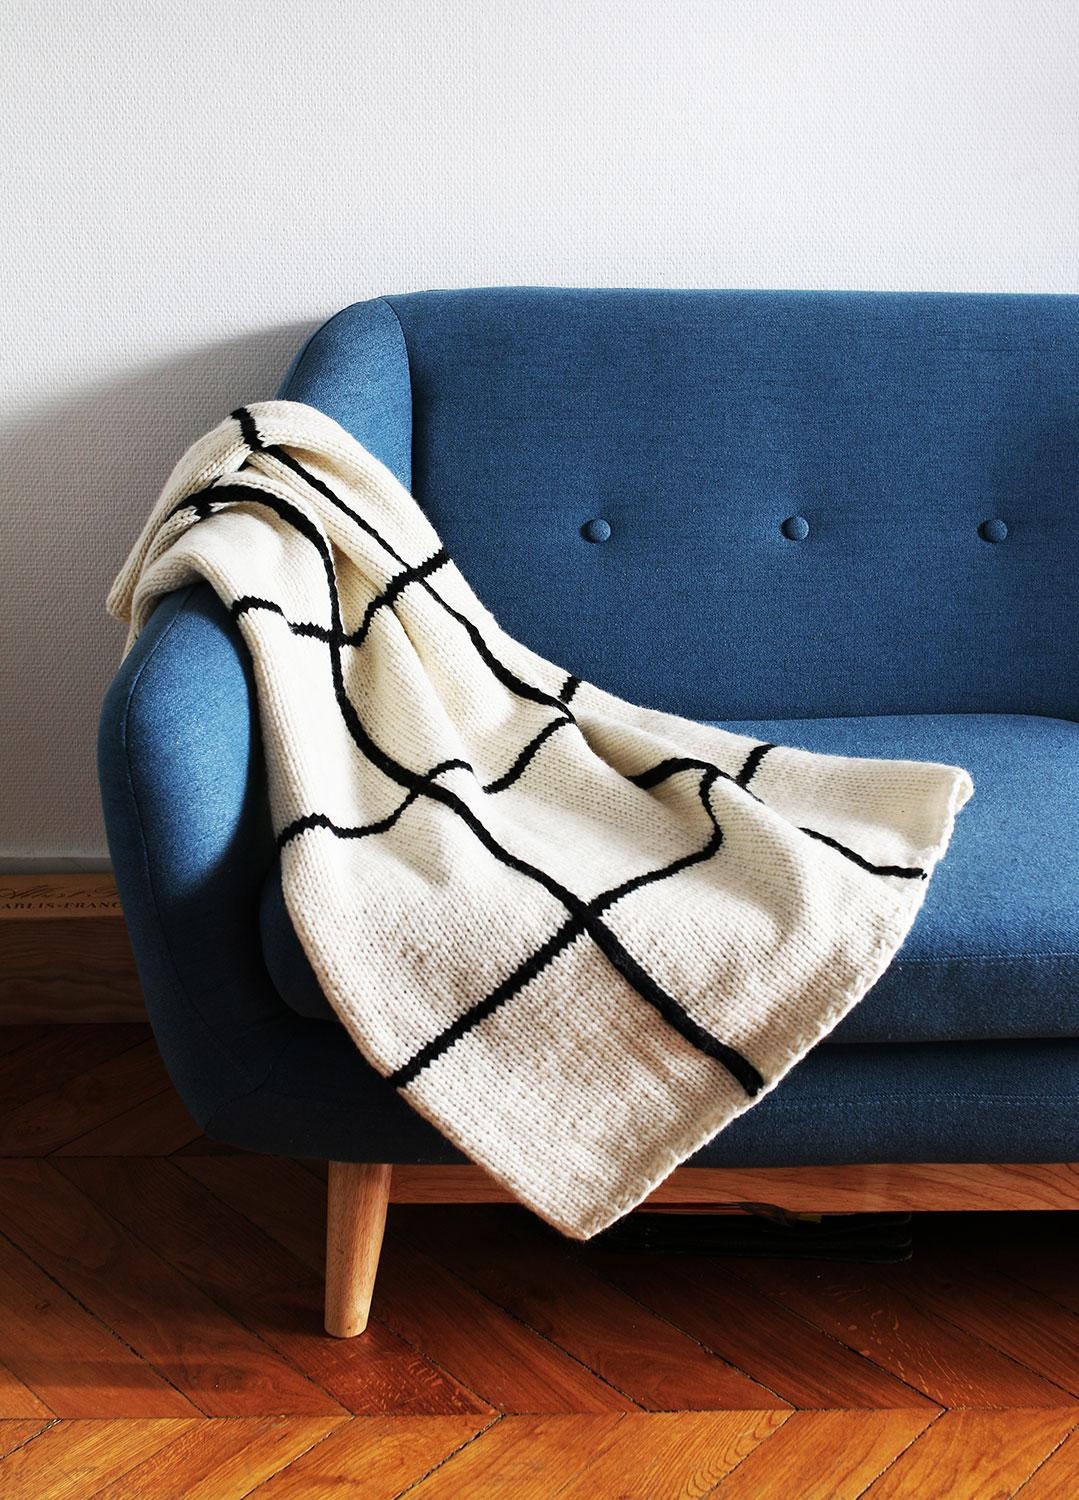 Wer hat einen Grid Teppich? 
Das ist die passende Decke im Gittermuster von @WeAreKnitters #stricken #diy #decken 